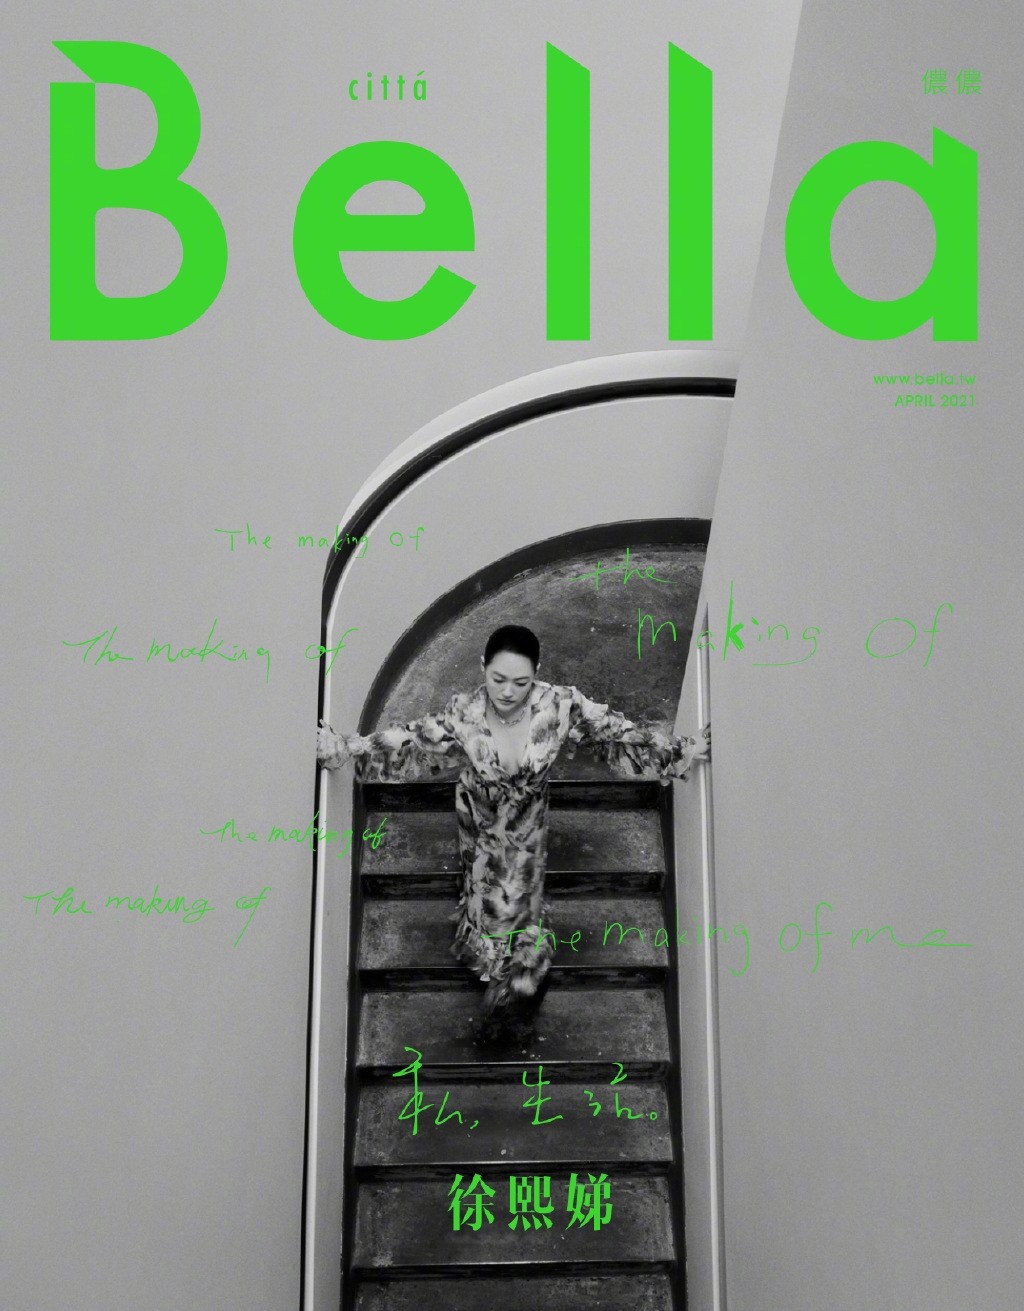 小S徐熙娣时尚杂志Bella封面写真图片